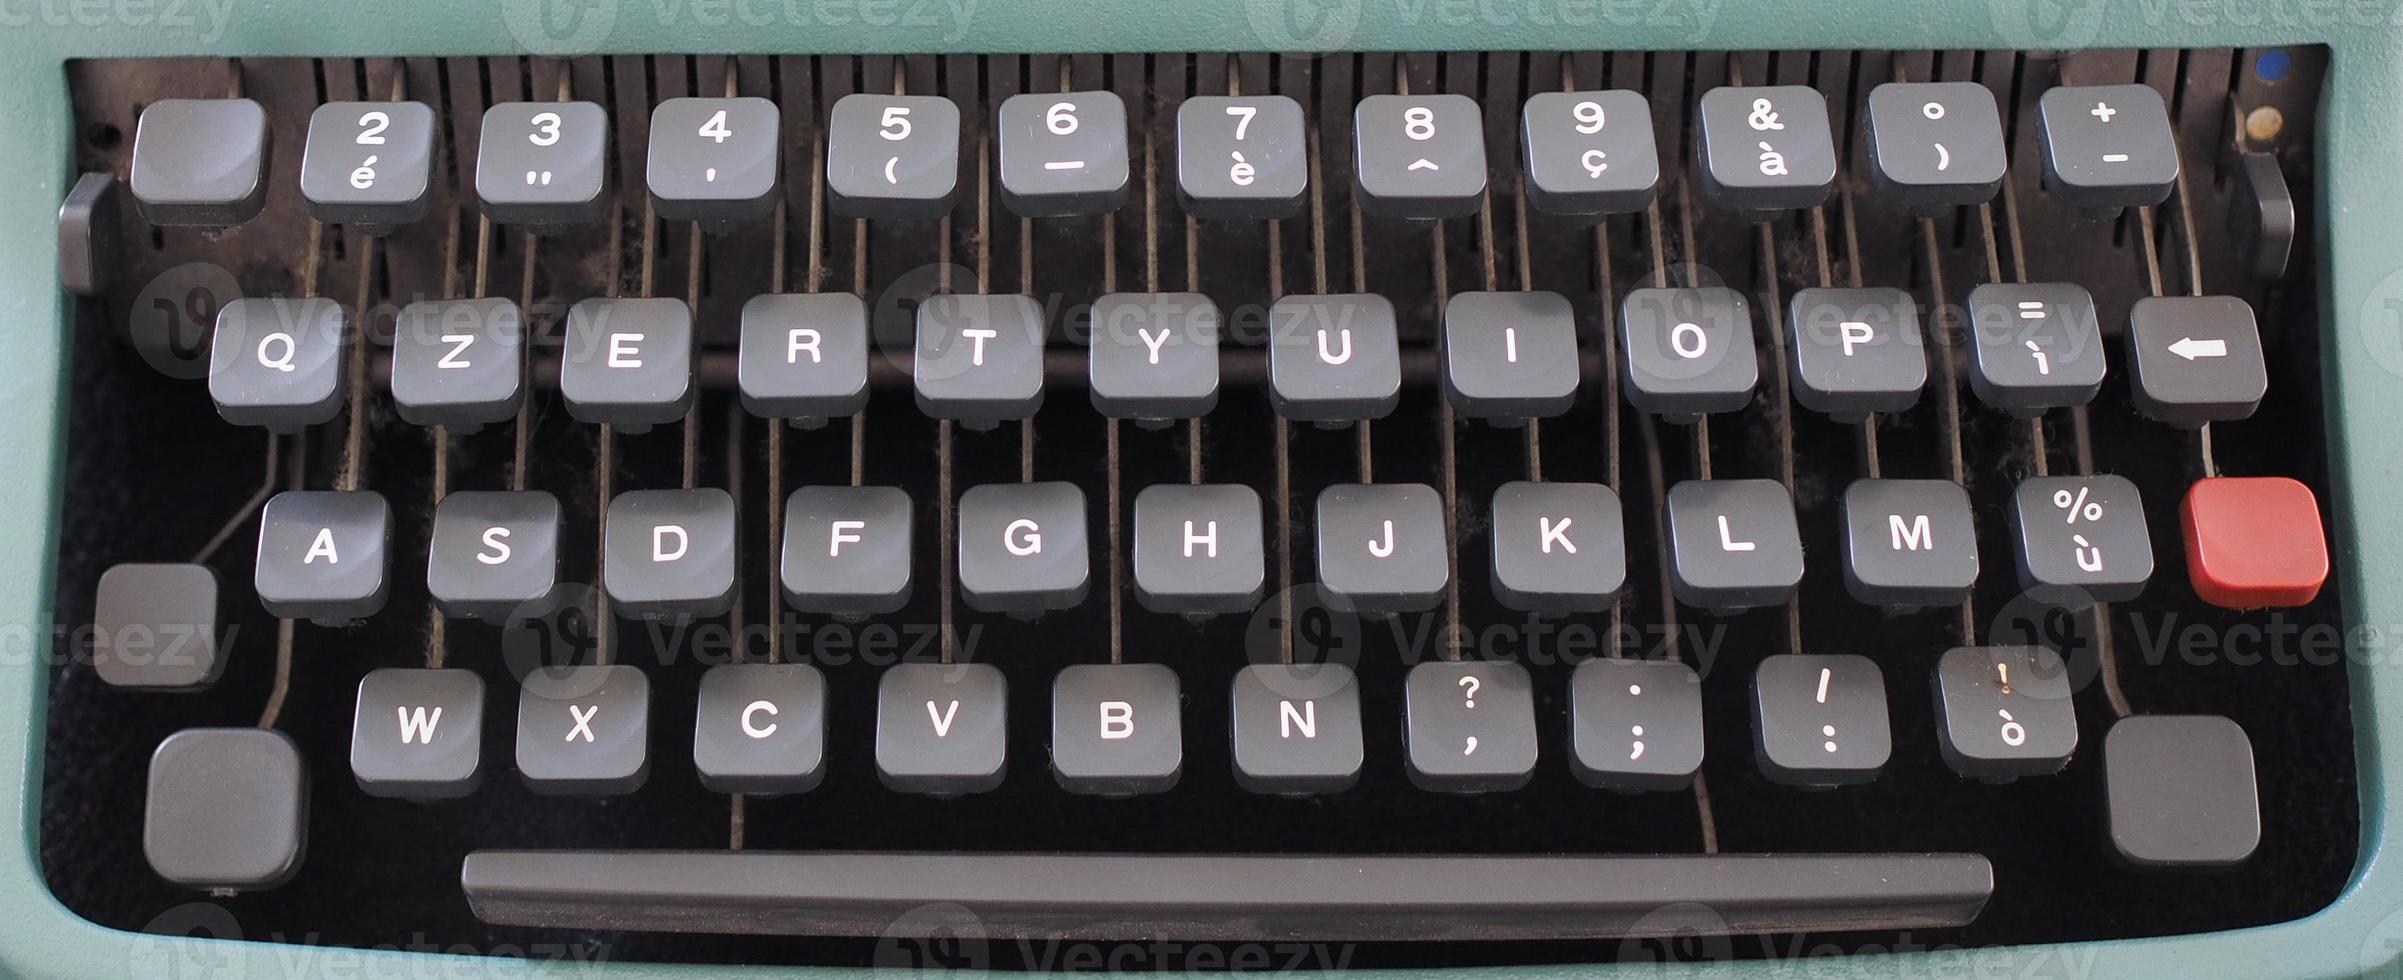 vintage typewriter keyboard photo